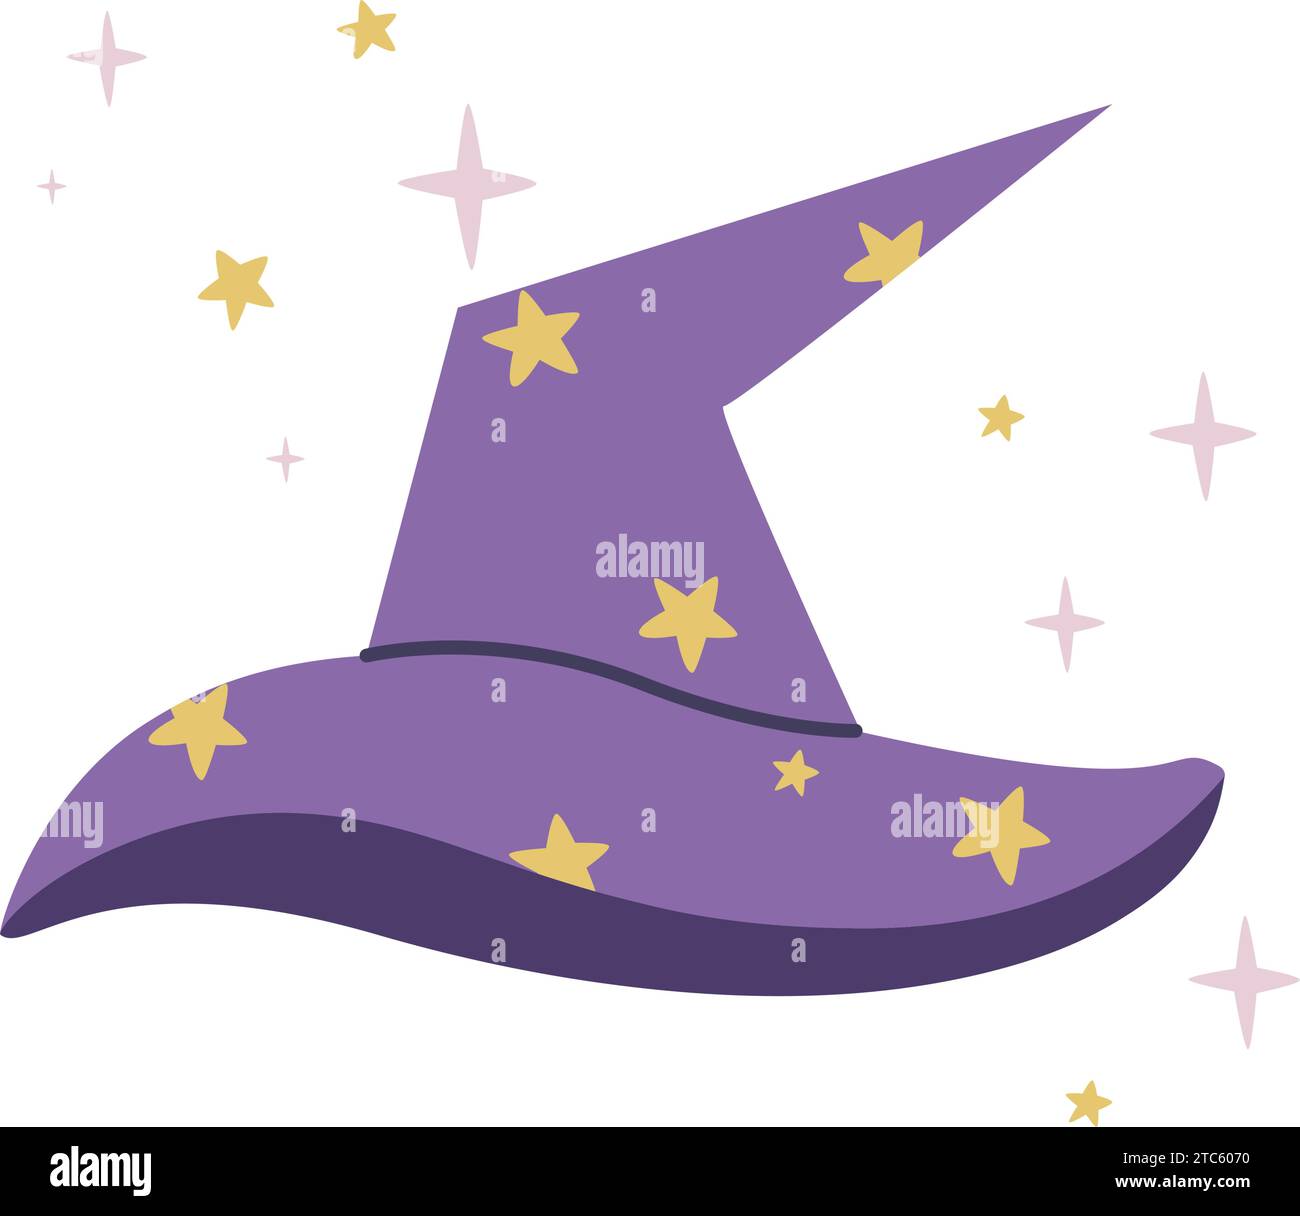 Zauberhut mit Sternen-Clip-Art. Handgezeichneter Zauberer oder Hexenkopf. Einfacher Zauberer oder Magier Hut flach Stil, isolierte Vektor Illustration Stock Vektor